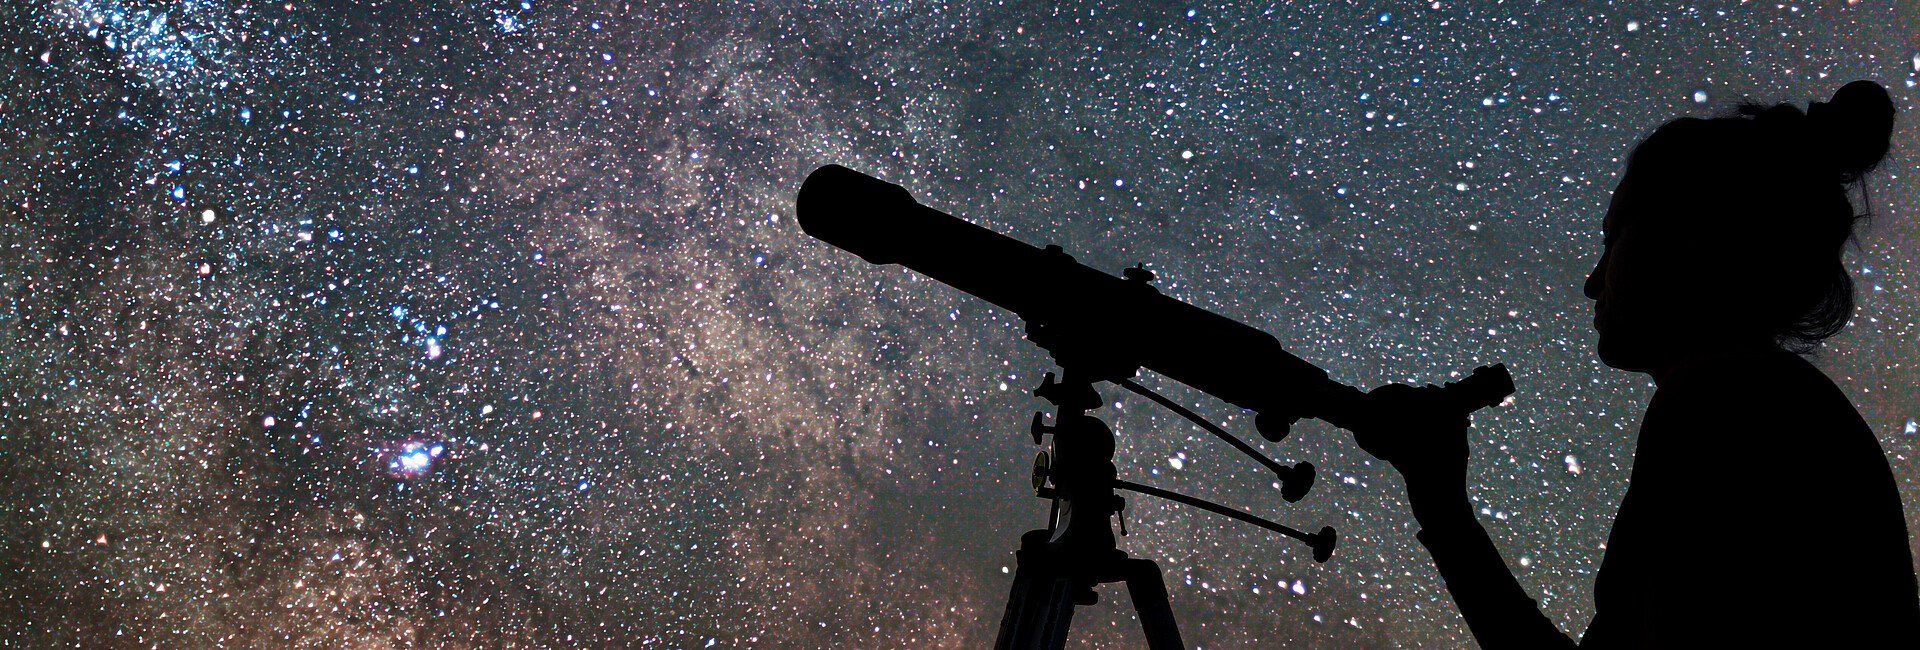 Schattenbild einer jungen Frau und eines Teleskops. Die Frau beobachtet die Sterne am nächtlichen Himmel.